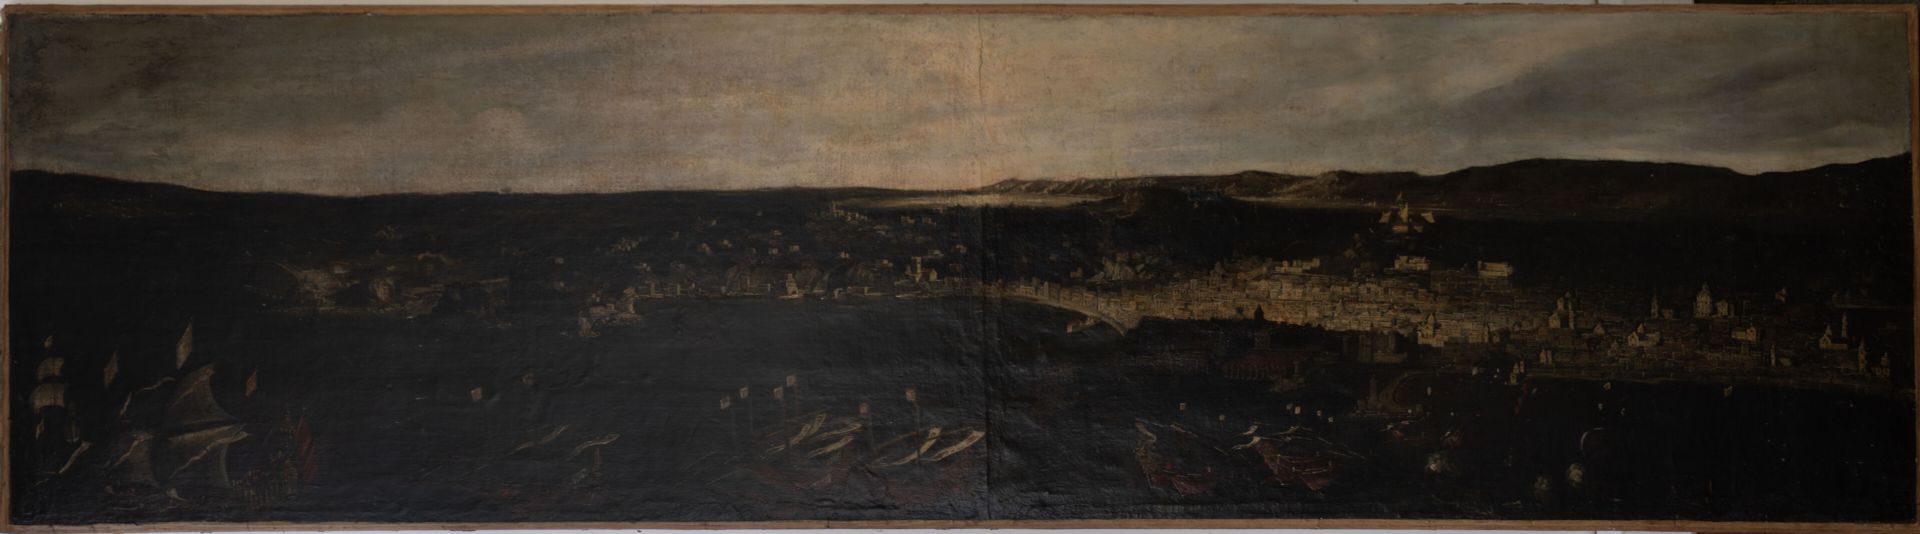 Null 18世纪意大利学校，托马索-鲁伊斯的随行人员（1710-1750年）。
那不勒斯湾全景图
布面油画
H.72厘米宽，271厘米高VS
修复，衬里